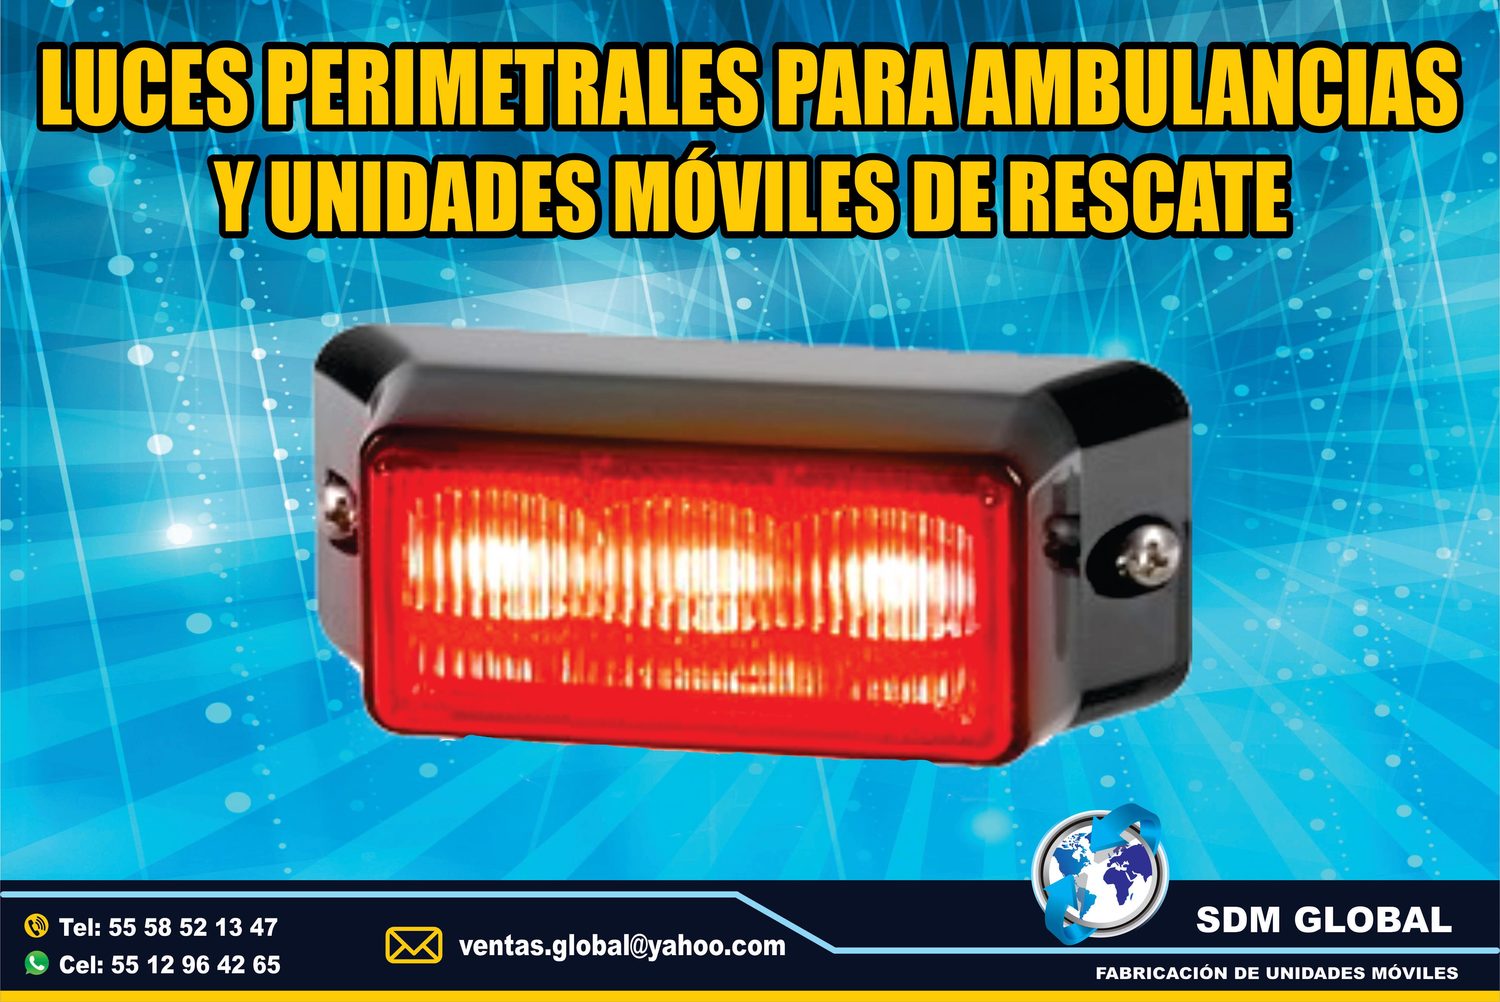 <span style="font-weight: bold;">Venta de Luces Perimetrales para Ambulancias de Traslado Tipo I, II </span><br>